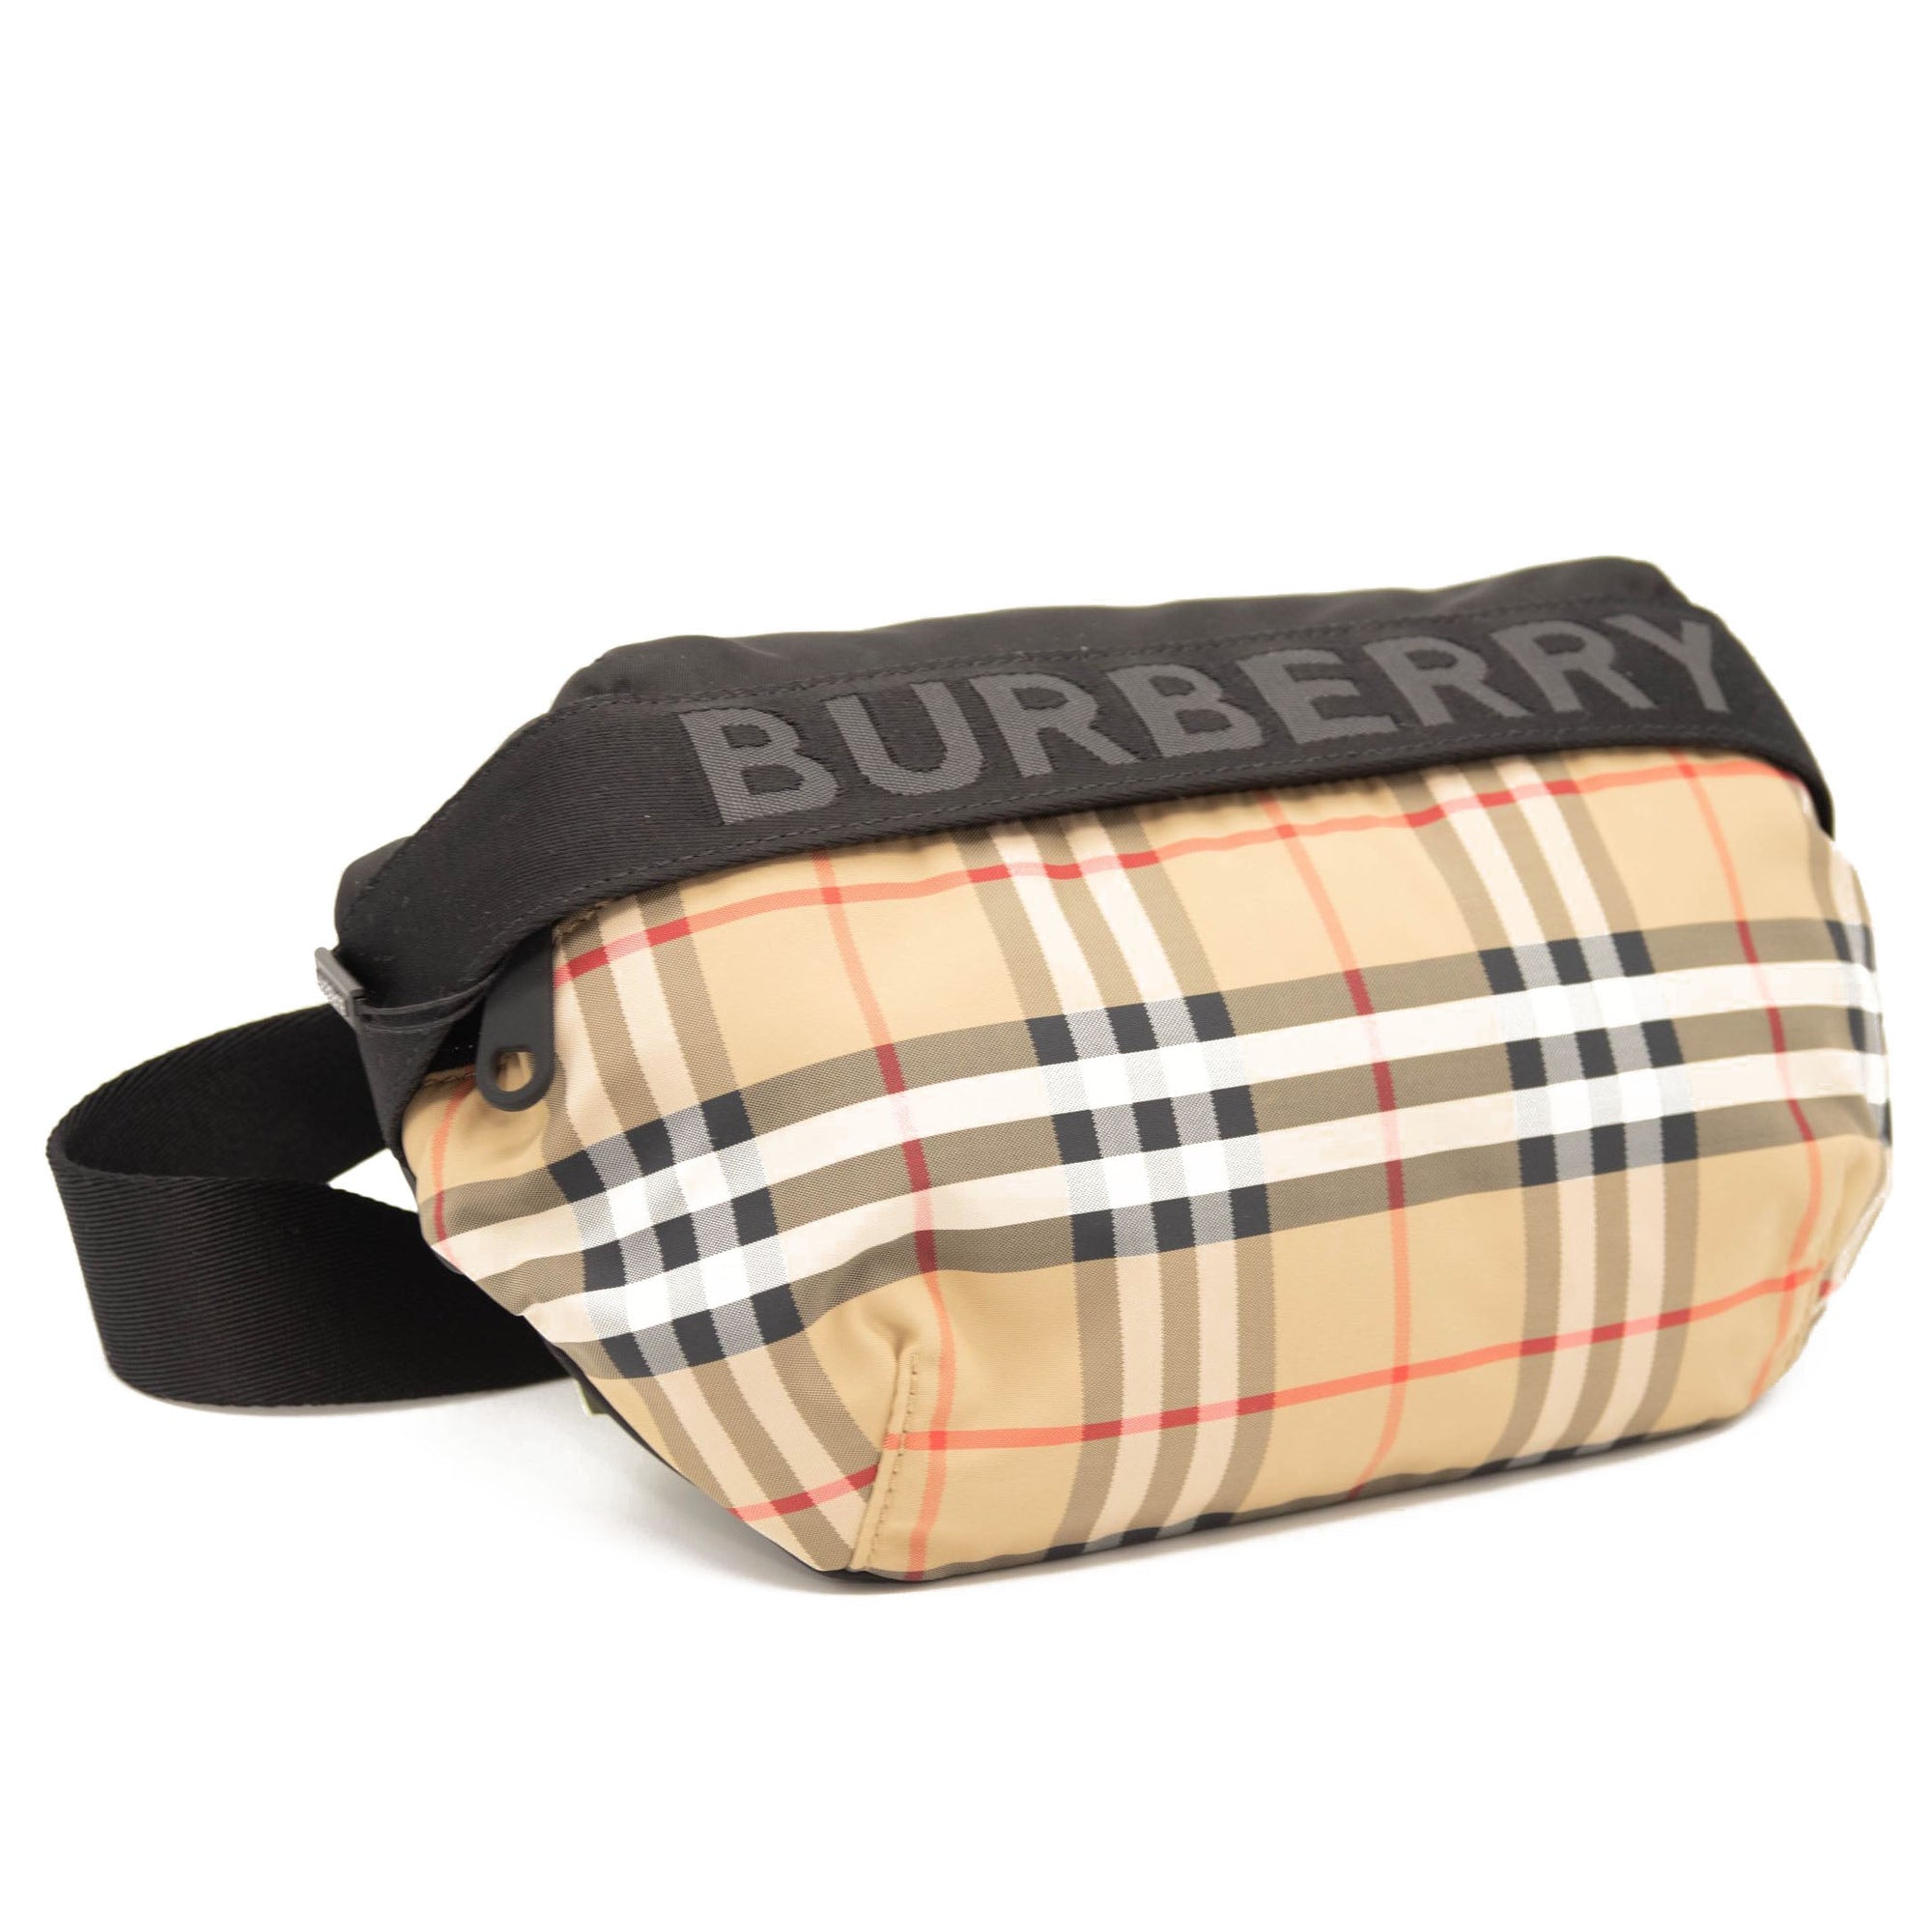 Burberry sonny logo embossed belt bag